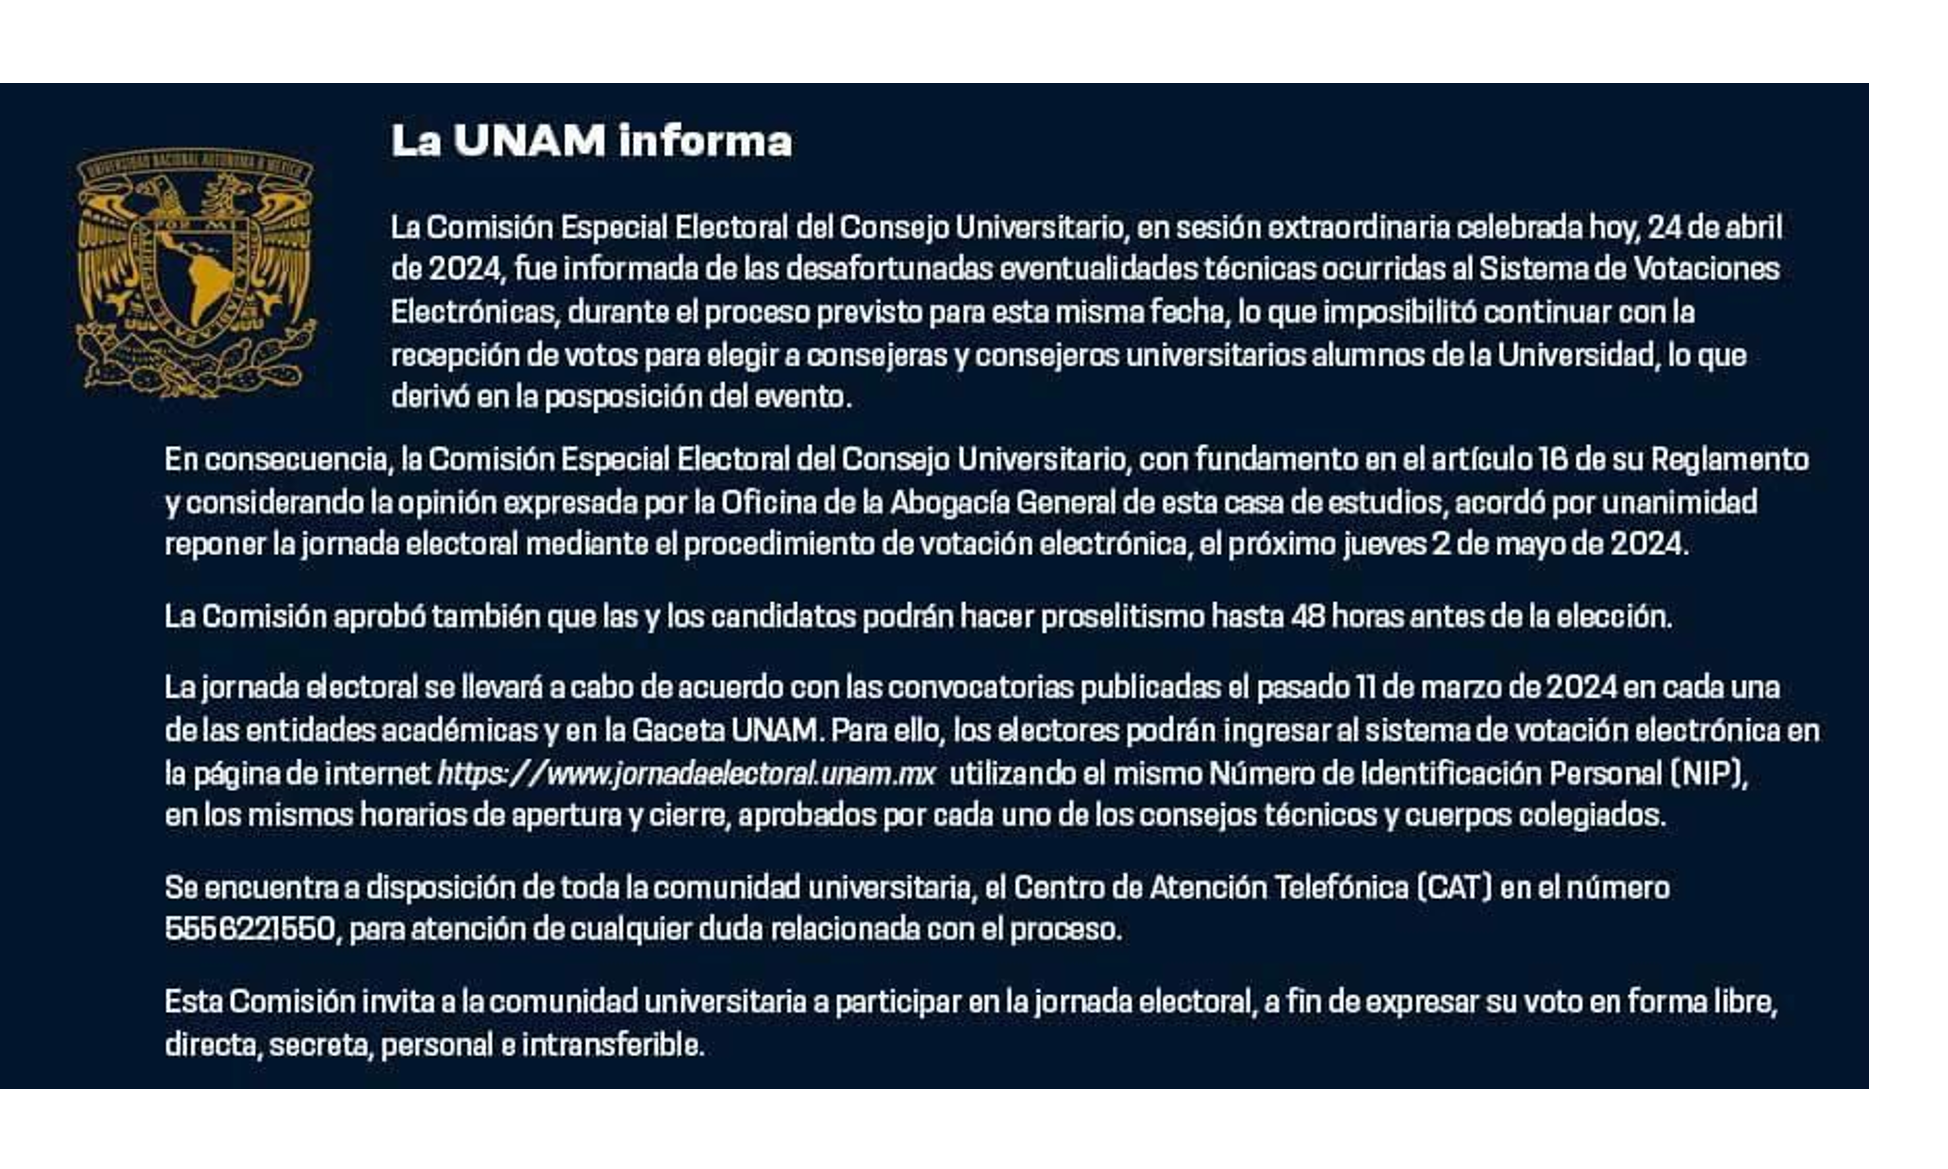 La UNAM informa